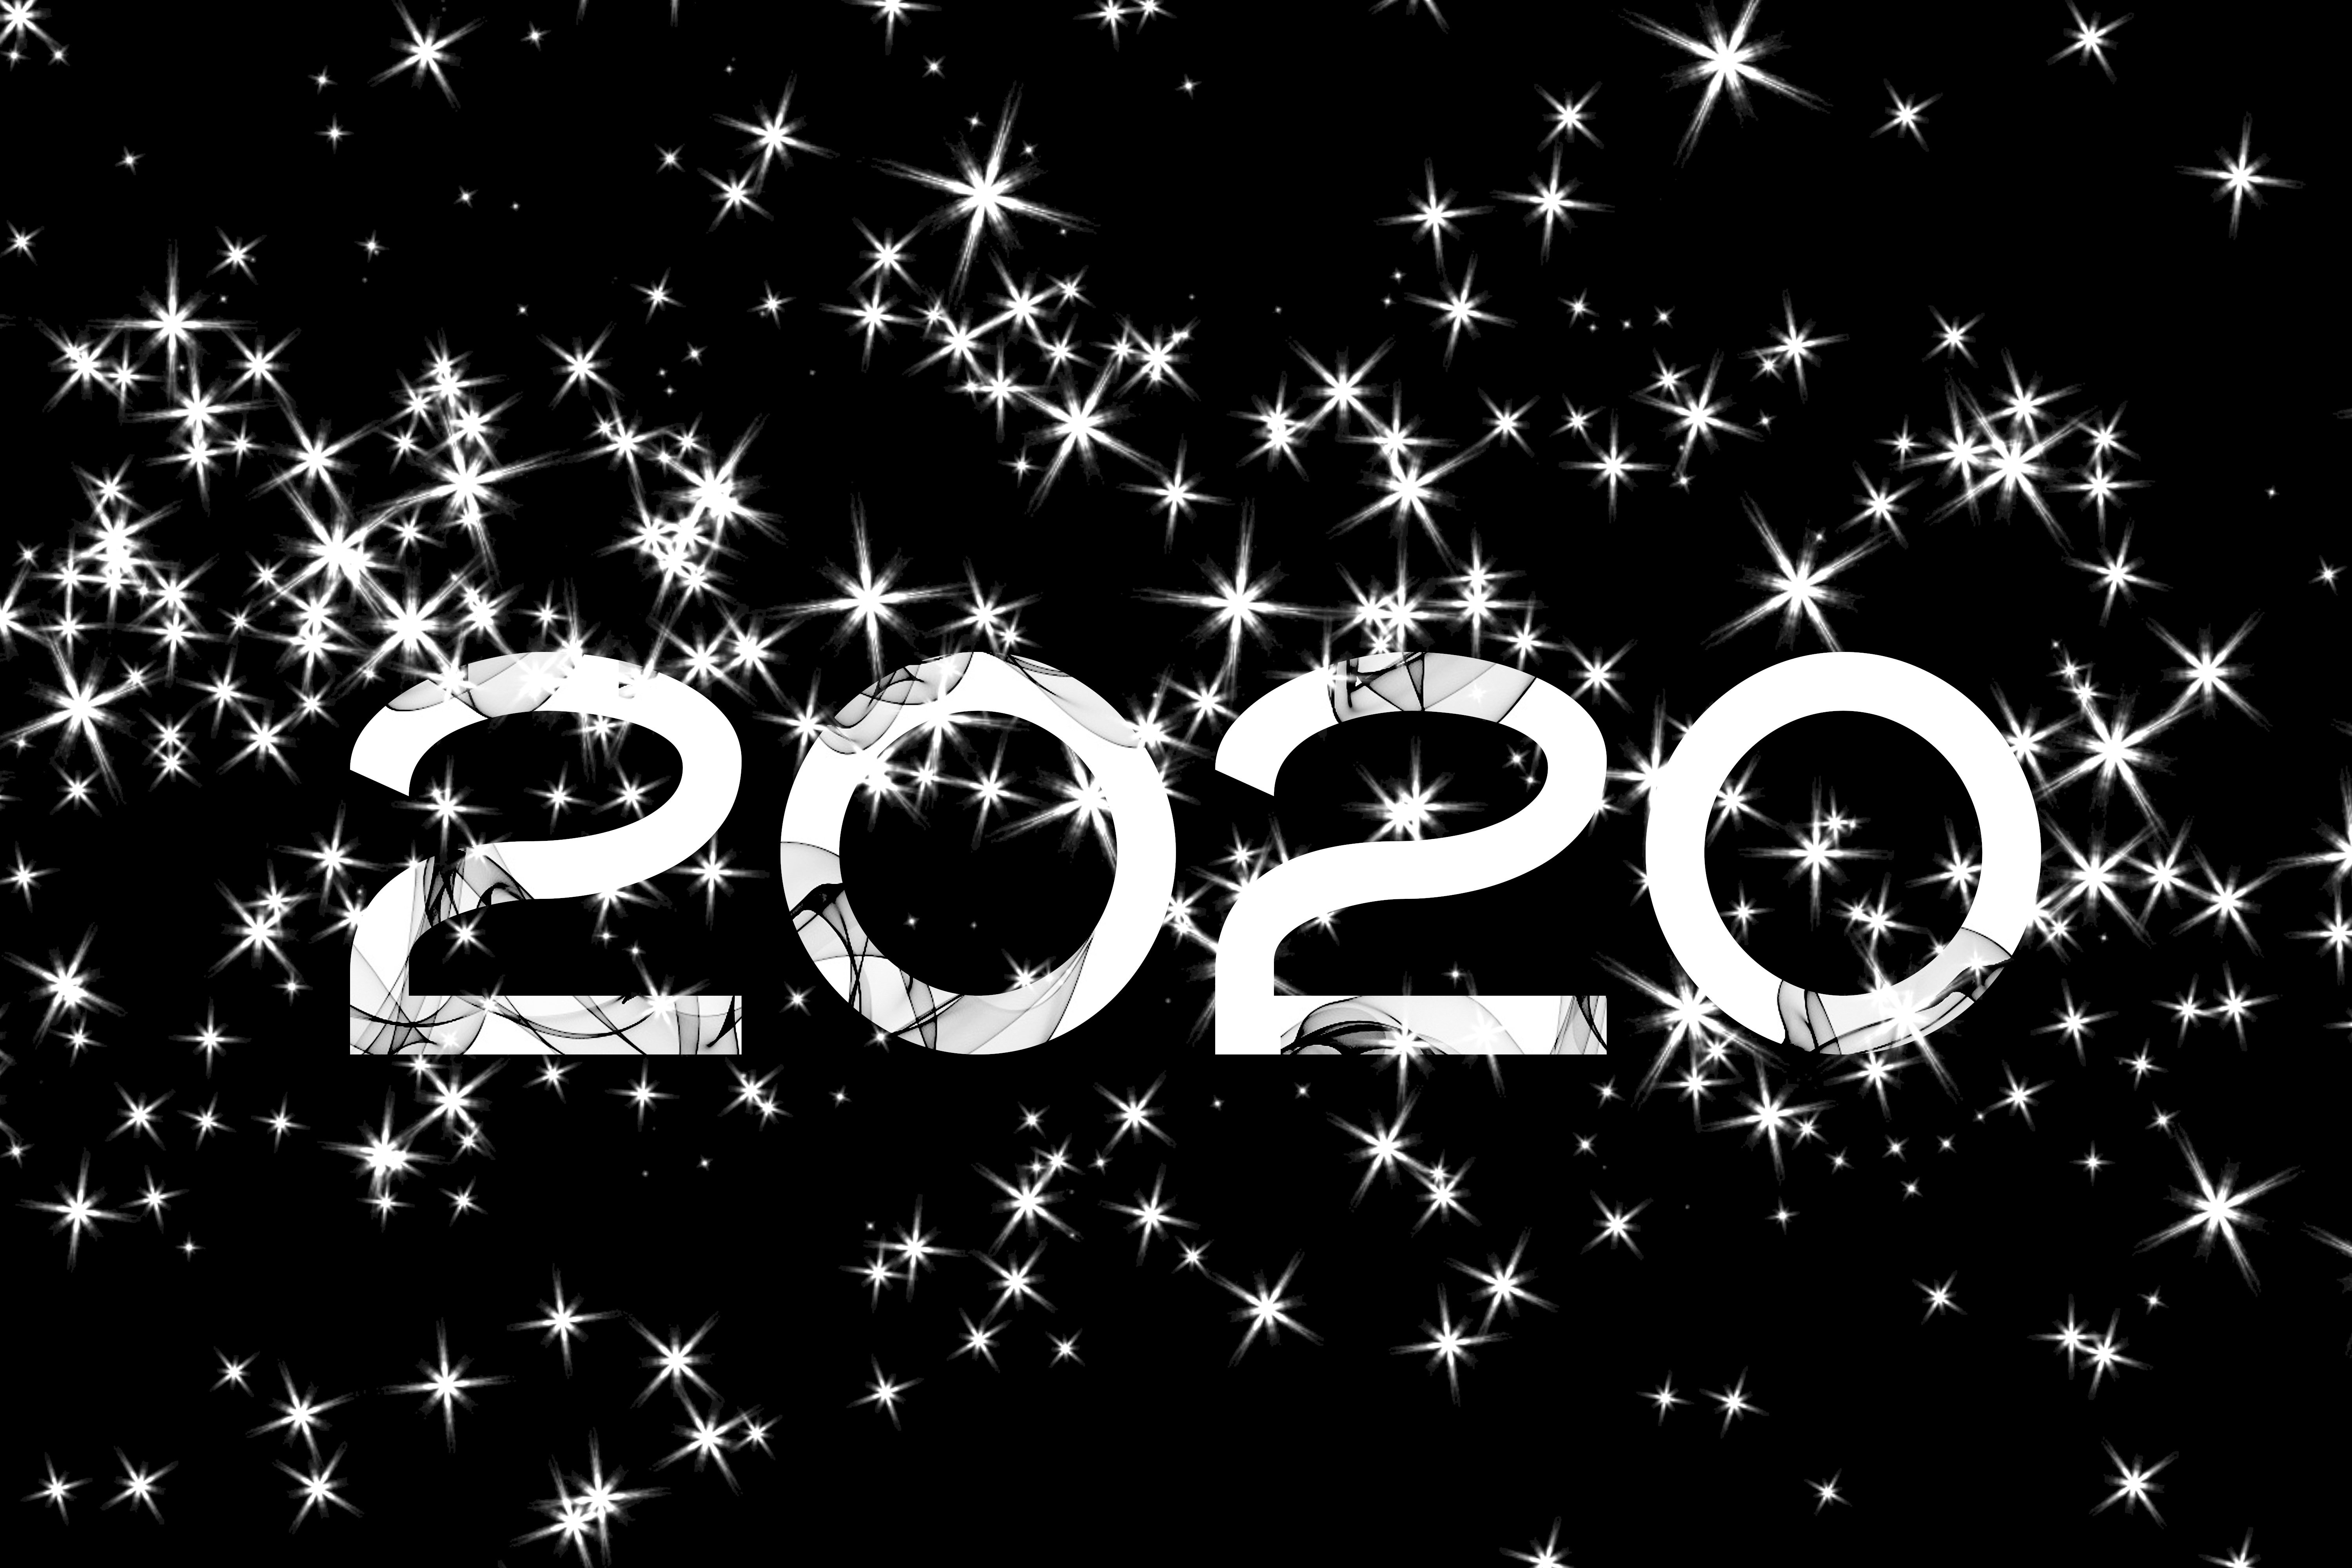 2020 – a pivotal year